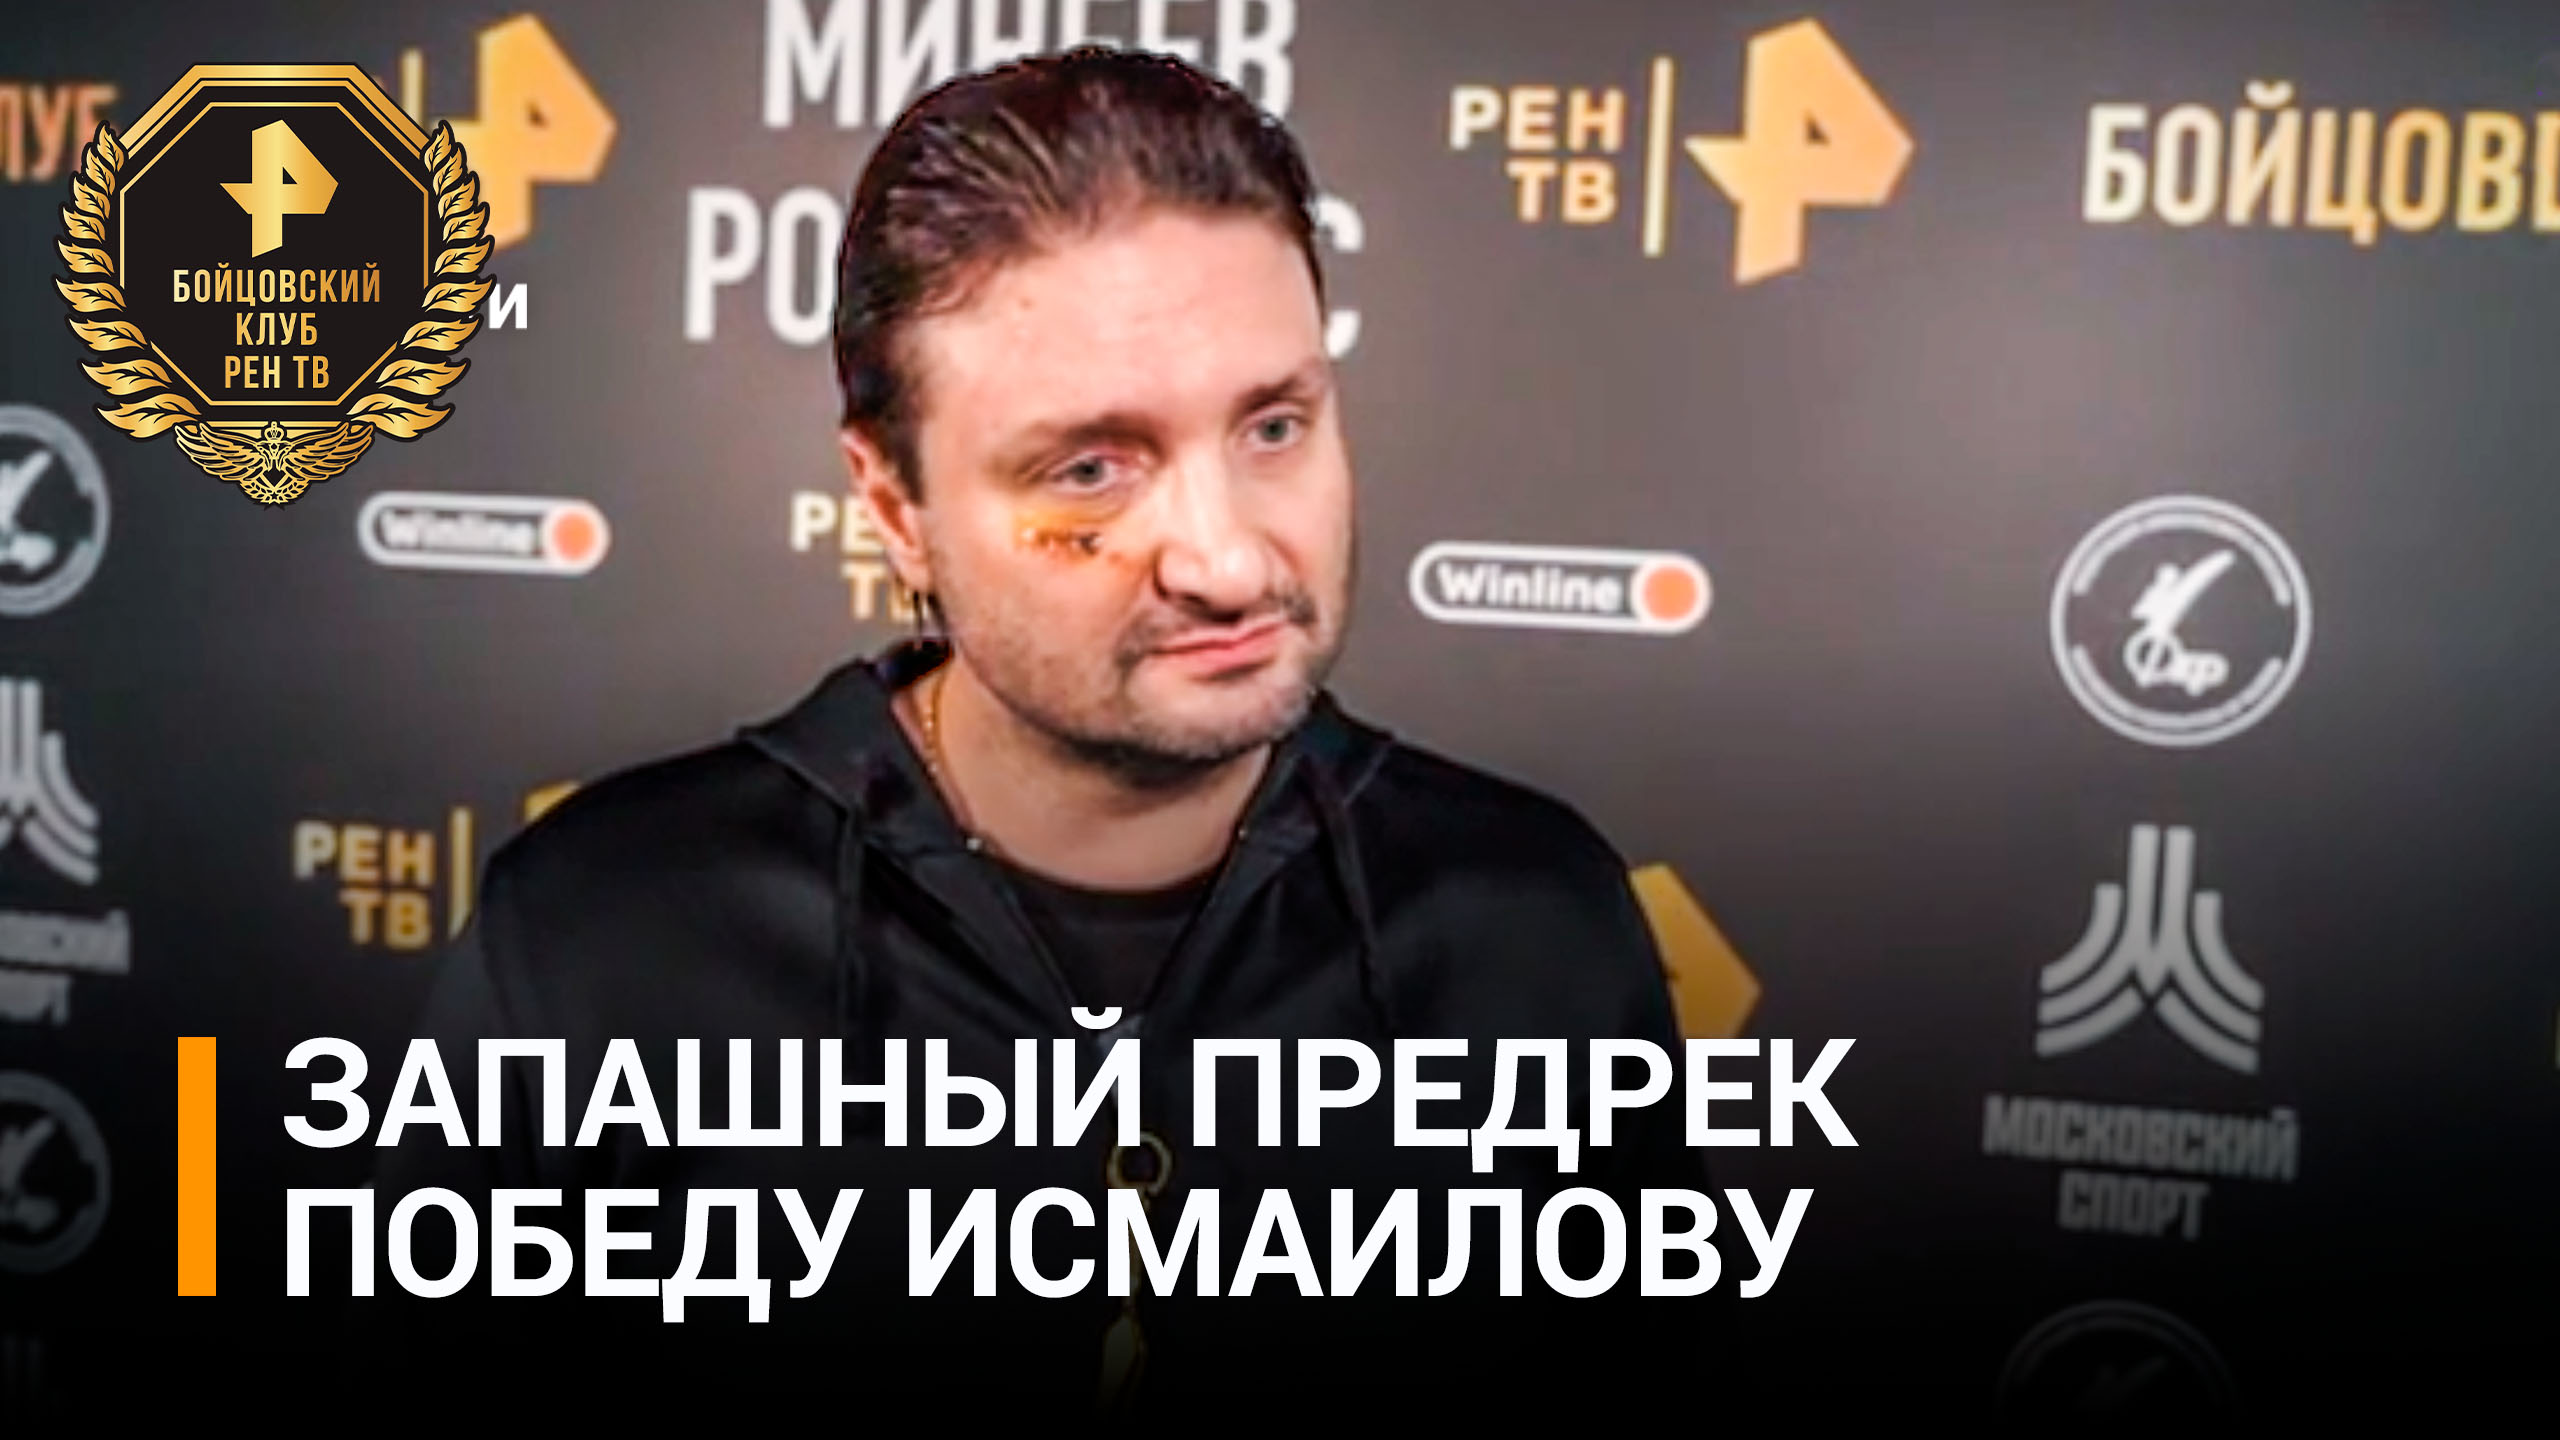 Запашный уверен, что Исмаилов победит Шлеменко: "Он крепкий, бьющий" / Бойцовский клуб РЕН